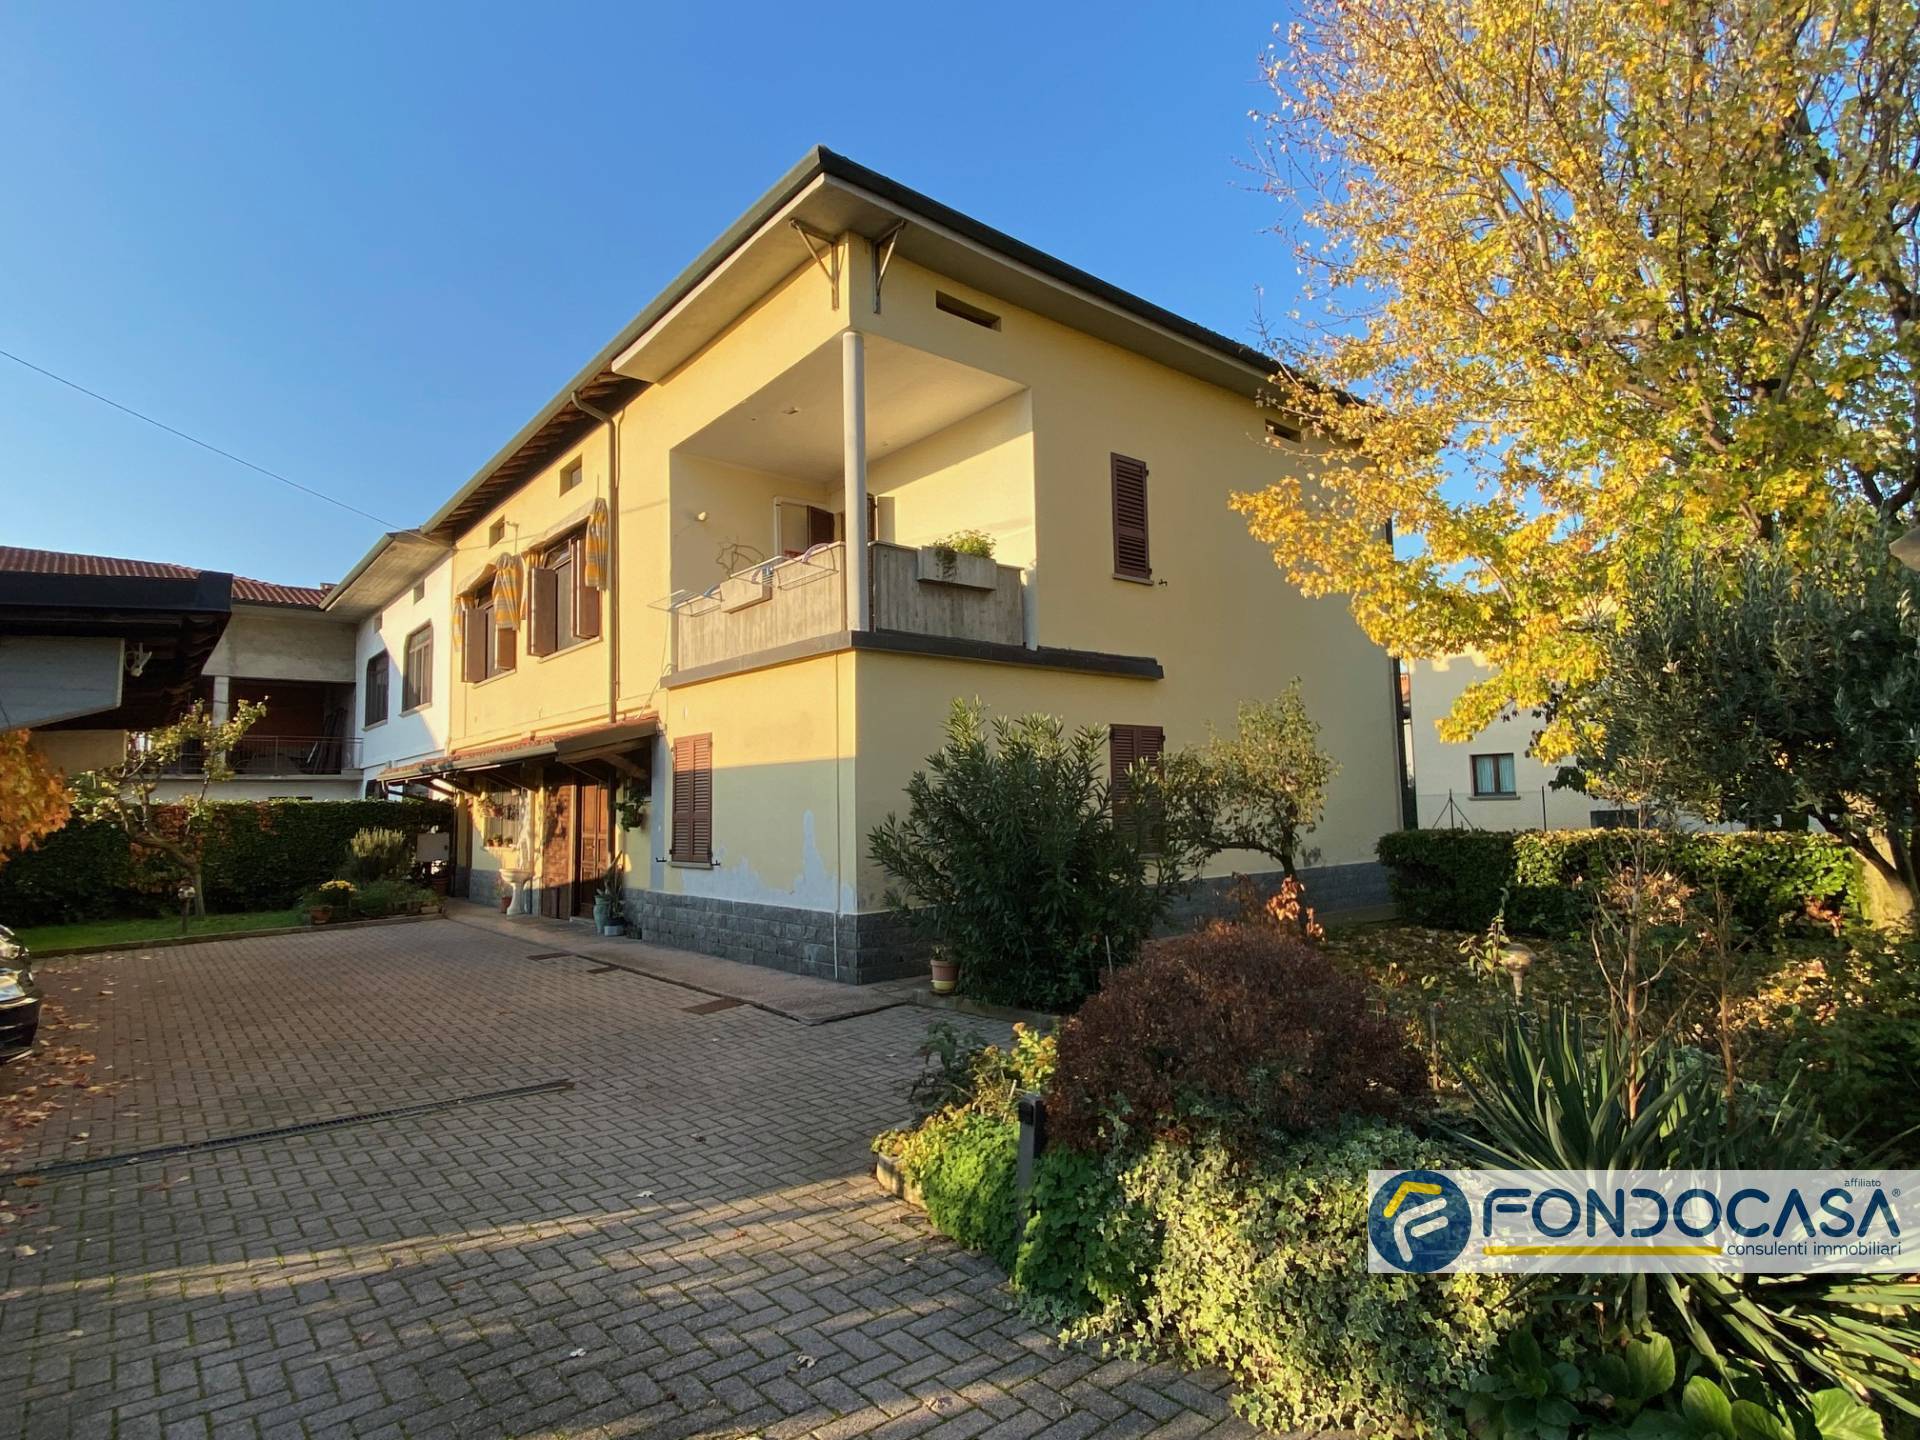 Villa in vendita a Castelli Calepio, 10 locali, prezzo € 280.000 | PortaleAgenzieImmobiliari.it